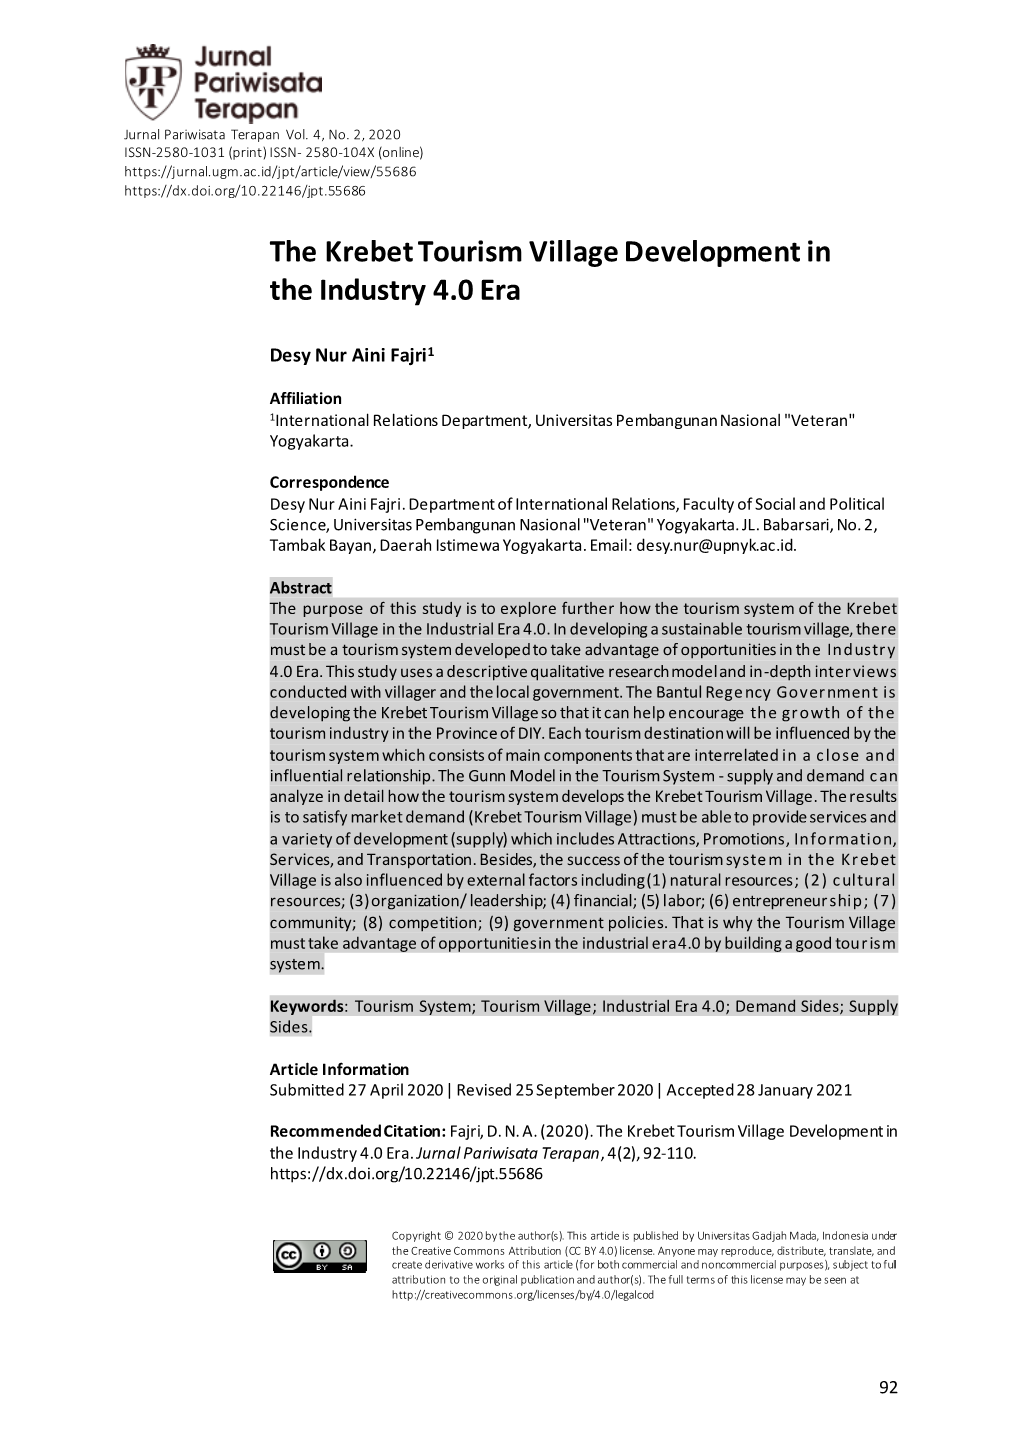 The Krebet Tourism Village Development in the Industry 4.0 Era